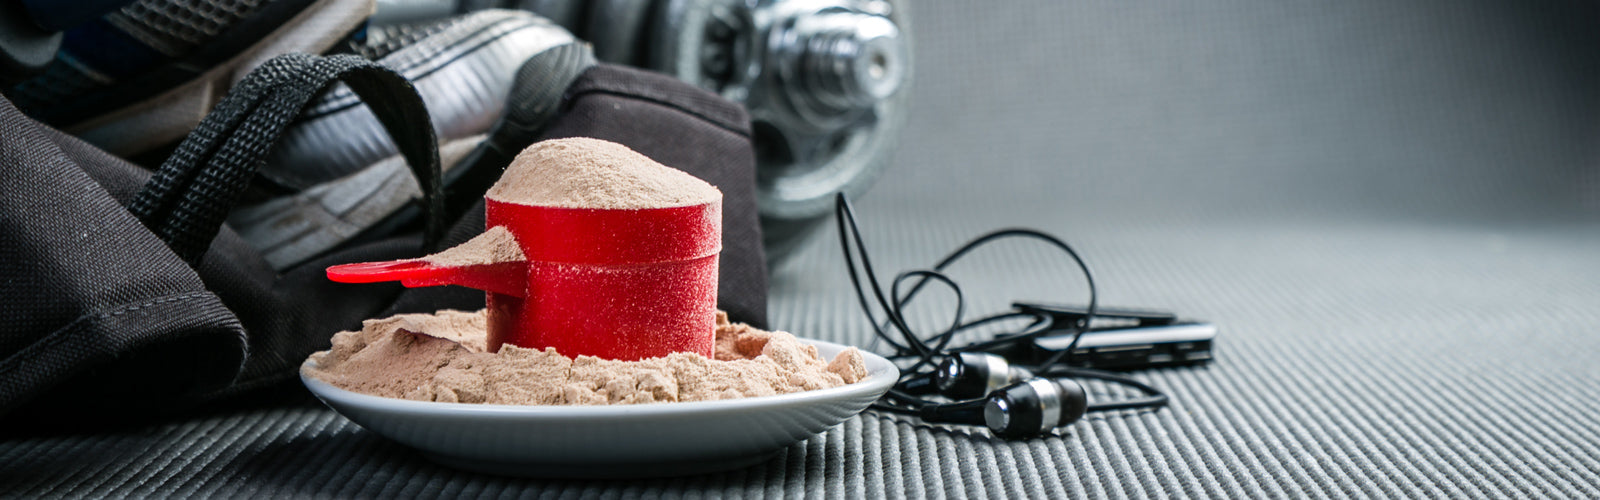 HD Essential Protein Powder - Hallelujah Diet